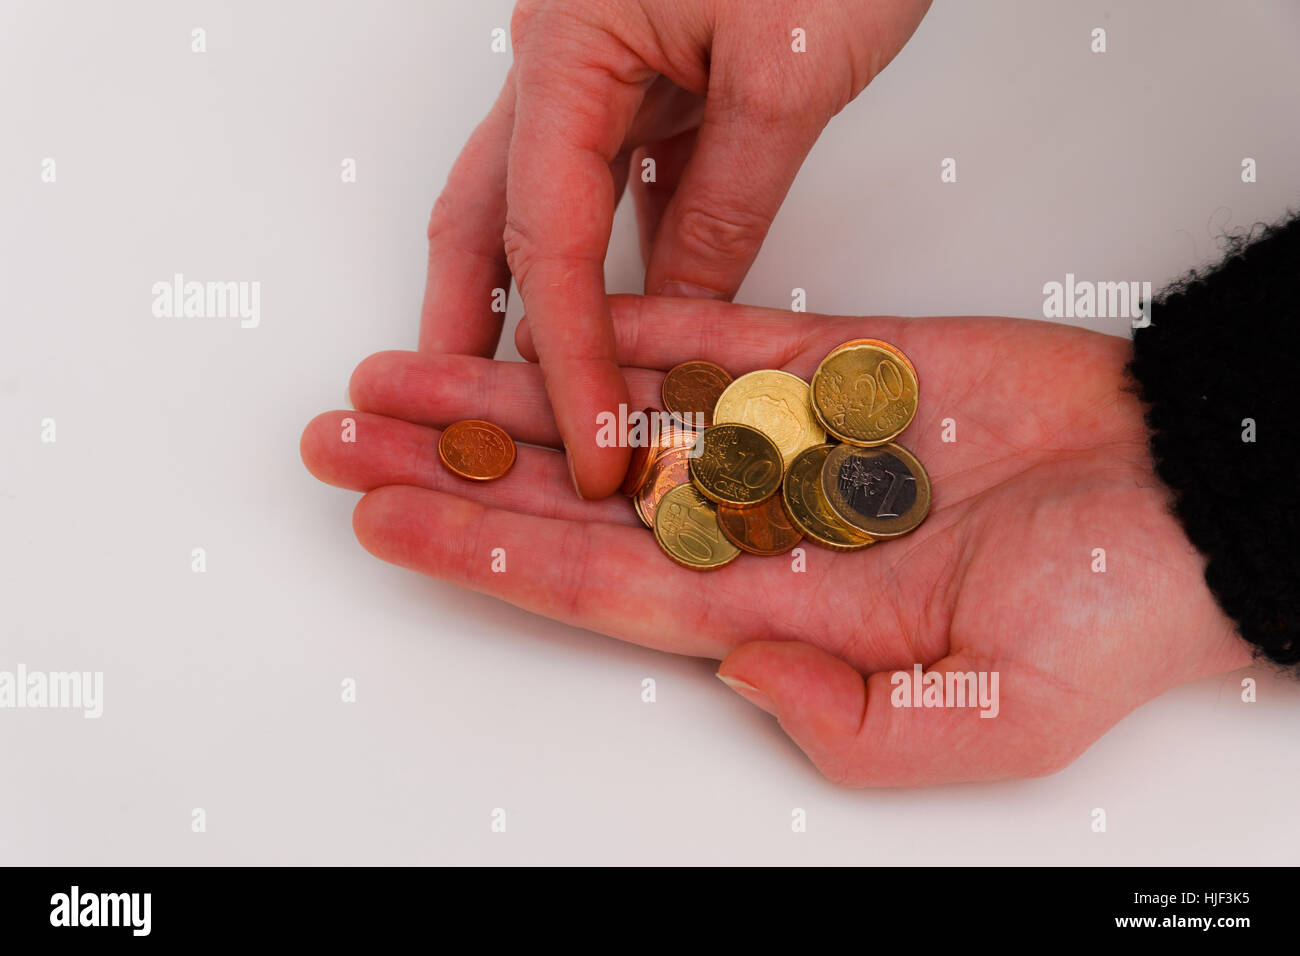 euro, coins, bill, money, hand, centstck, euro banknote, eurocent, euroschein, Stock Photo